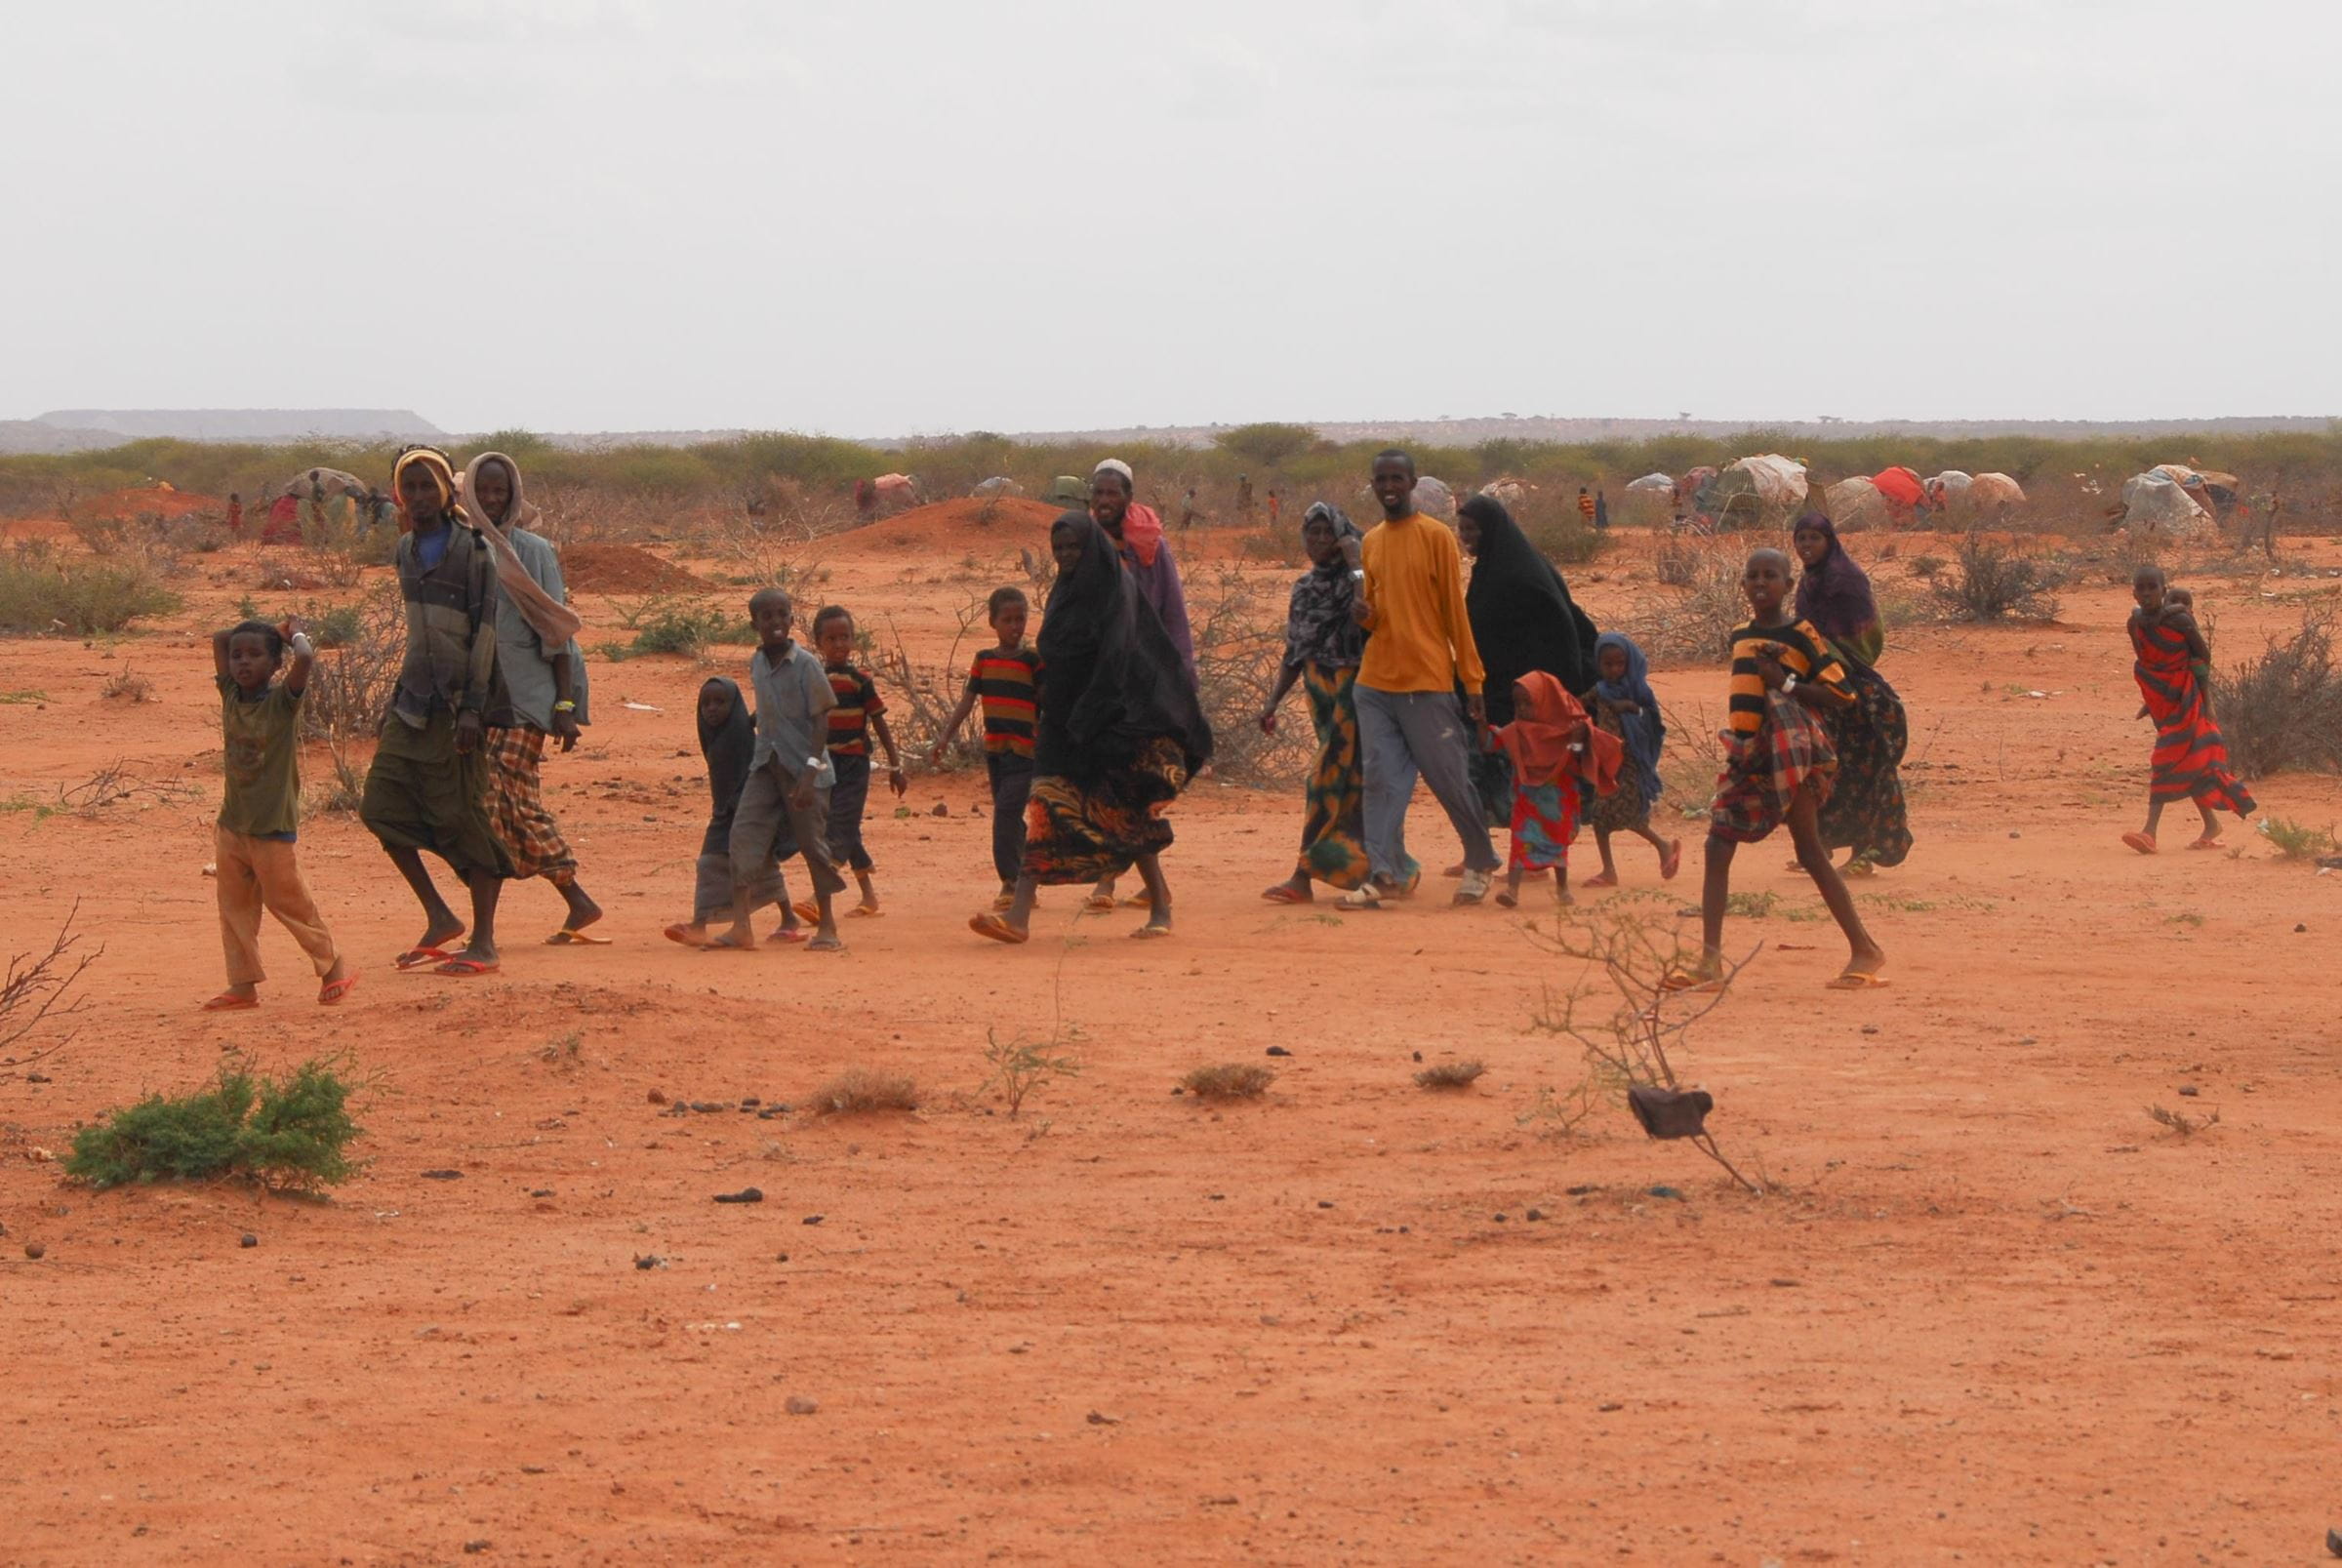 Menschen auf der Flucht laufen durch ein Wüstengebiet am Horn von Afrika. (Quelle: Dietmar Roller)